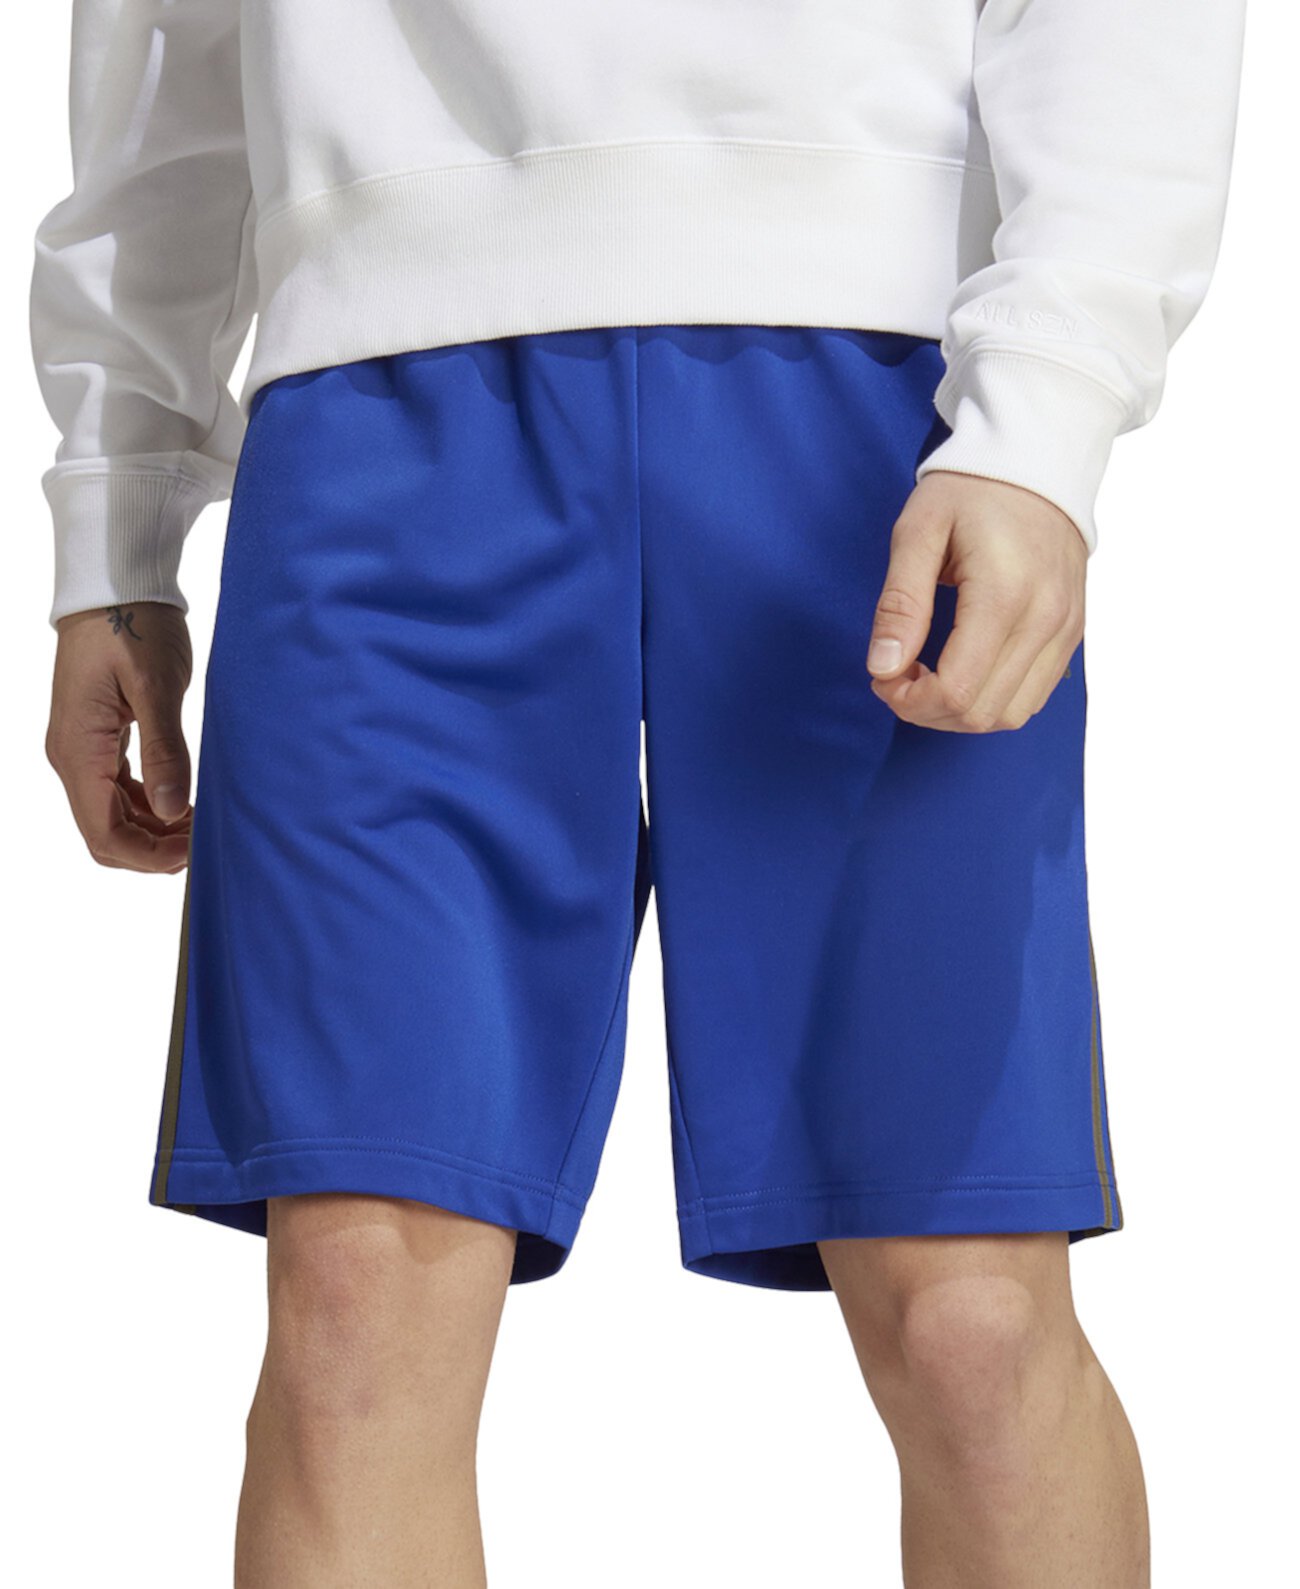 Мужские шорты Essentials Warm-Up с 3 полосками 10 дюймов Adidas